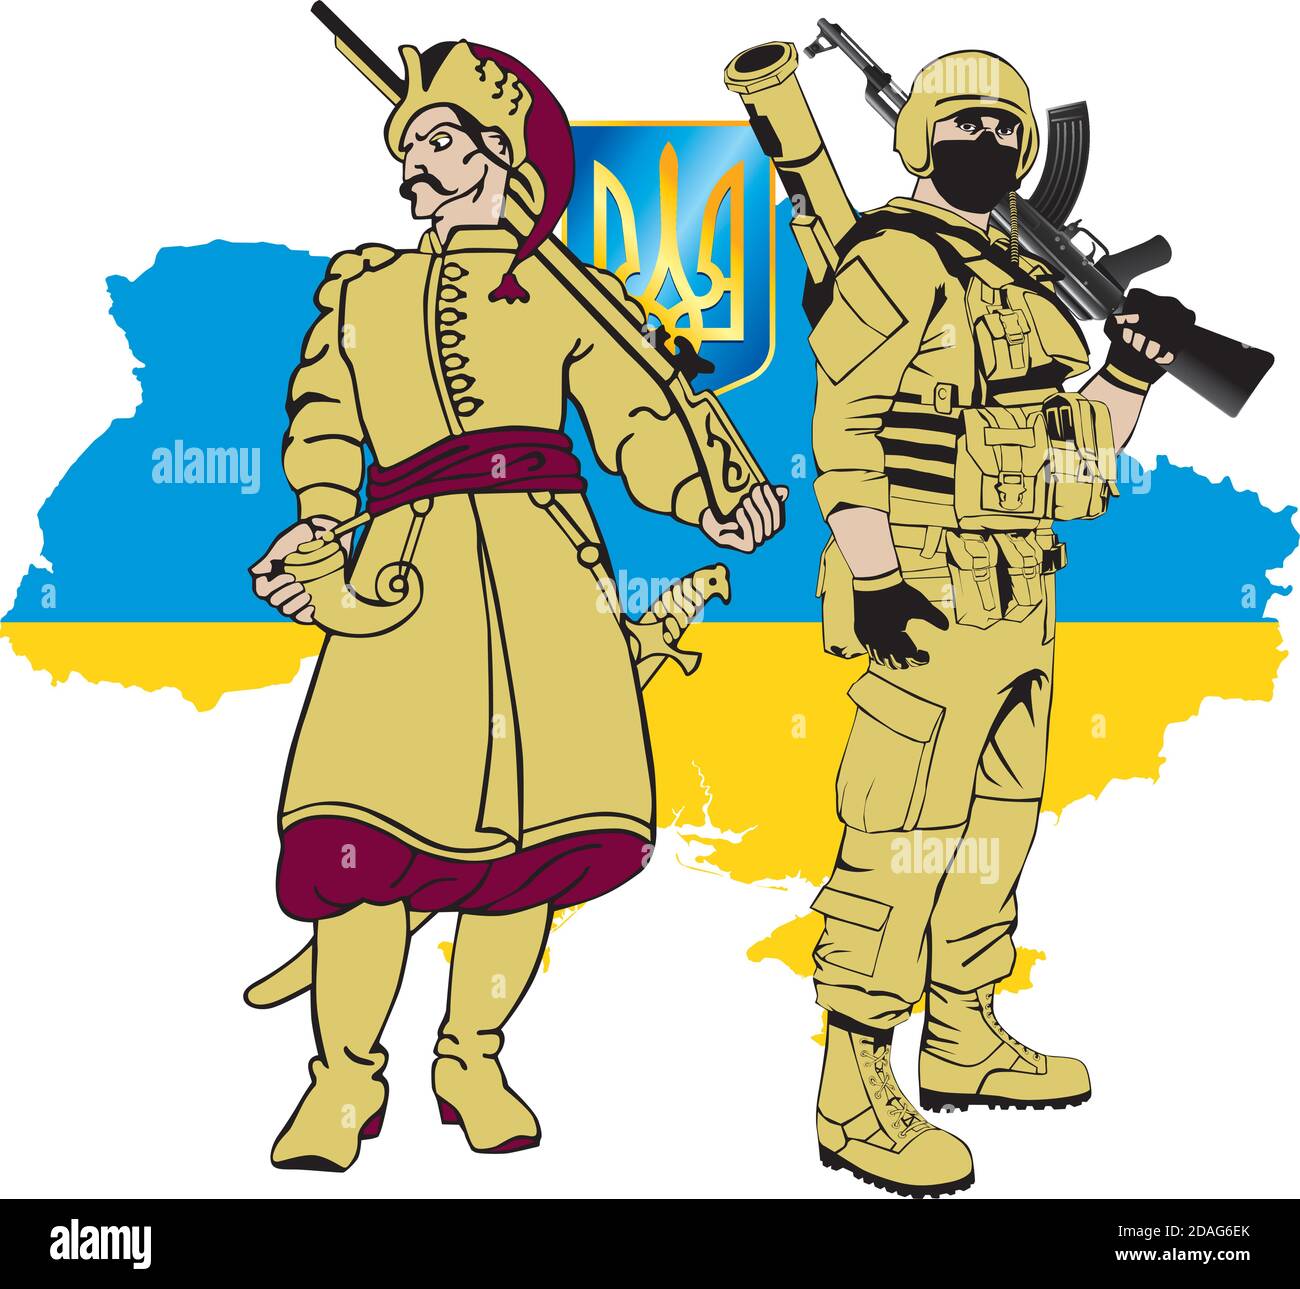 Soldats ukrainiens - Zaporozhye Cosaque et un soldat moderne contre La silhouette de l'Ukraine Illustration de Vecteur